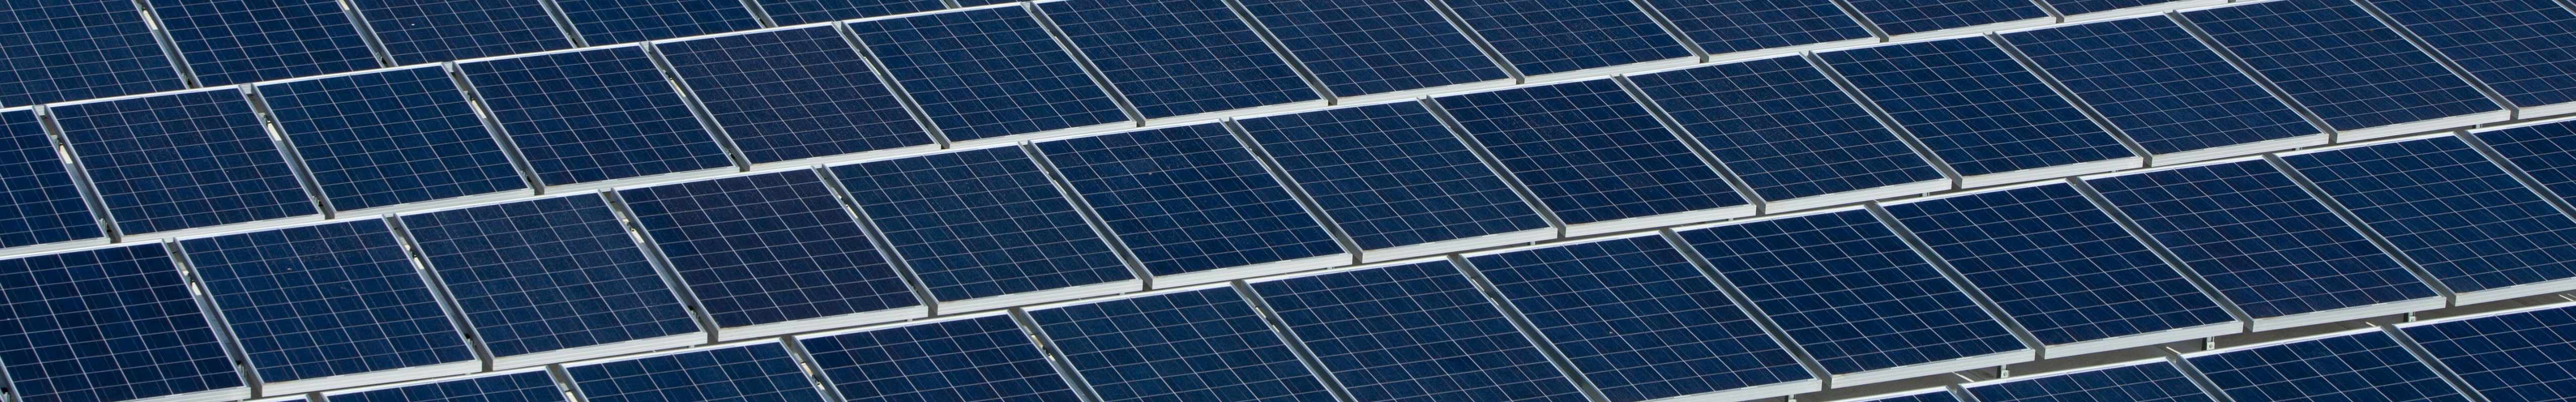 Η SEAT S.A. θα εγκαταστήσει 39,000 νέα ηλιακά πάνελ για να τριπλασιάσει τη δυνατότητά της σε παραγωγή ανανεώσιμης ενέργειας 